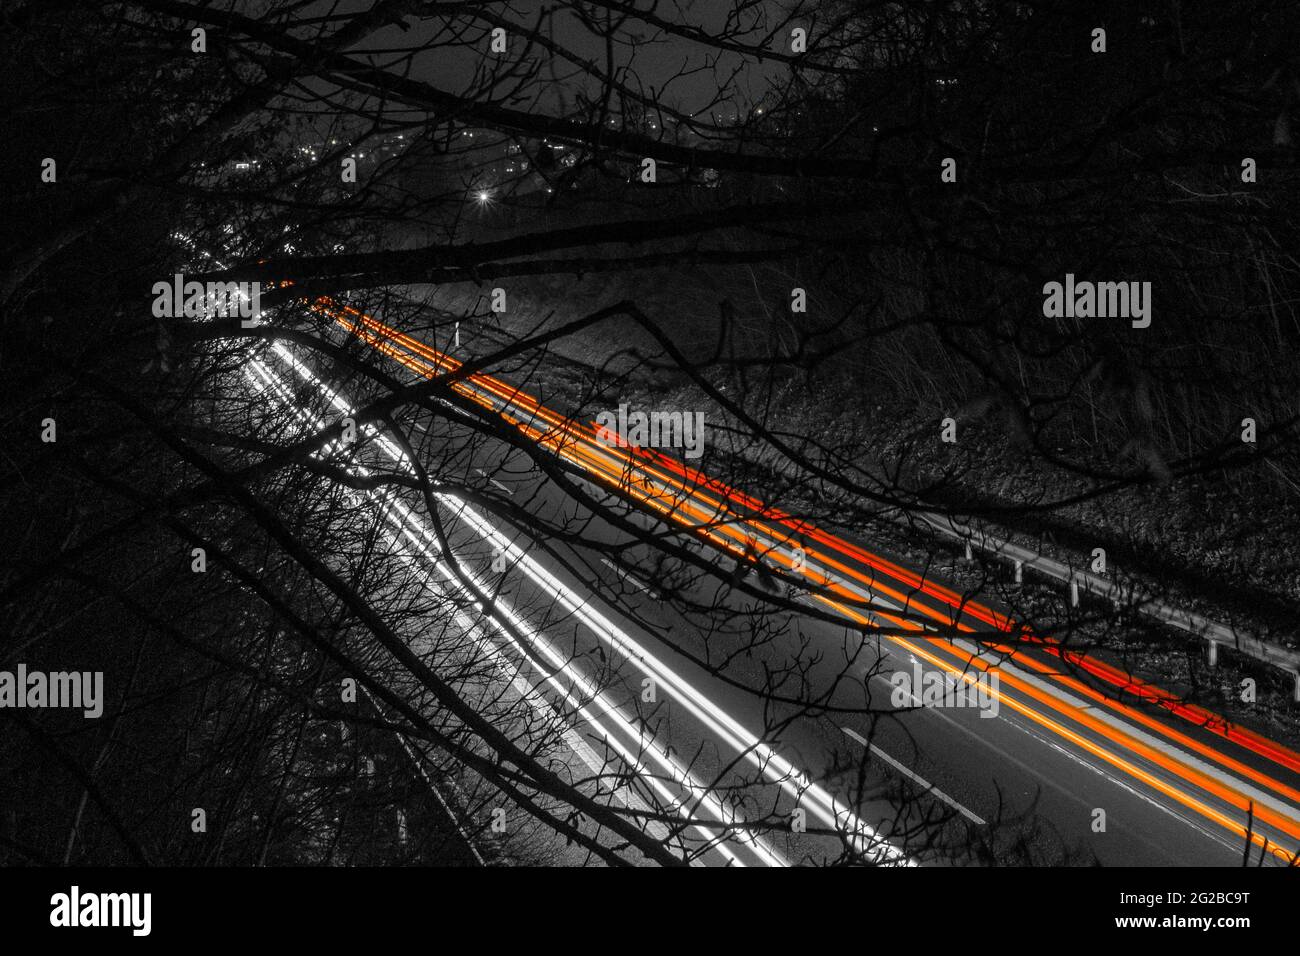 des traces claires de voitures sur l'autoroute avec des arbres et des branches dans une atmosphère sombre et sinistre Banque D'Images